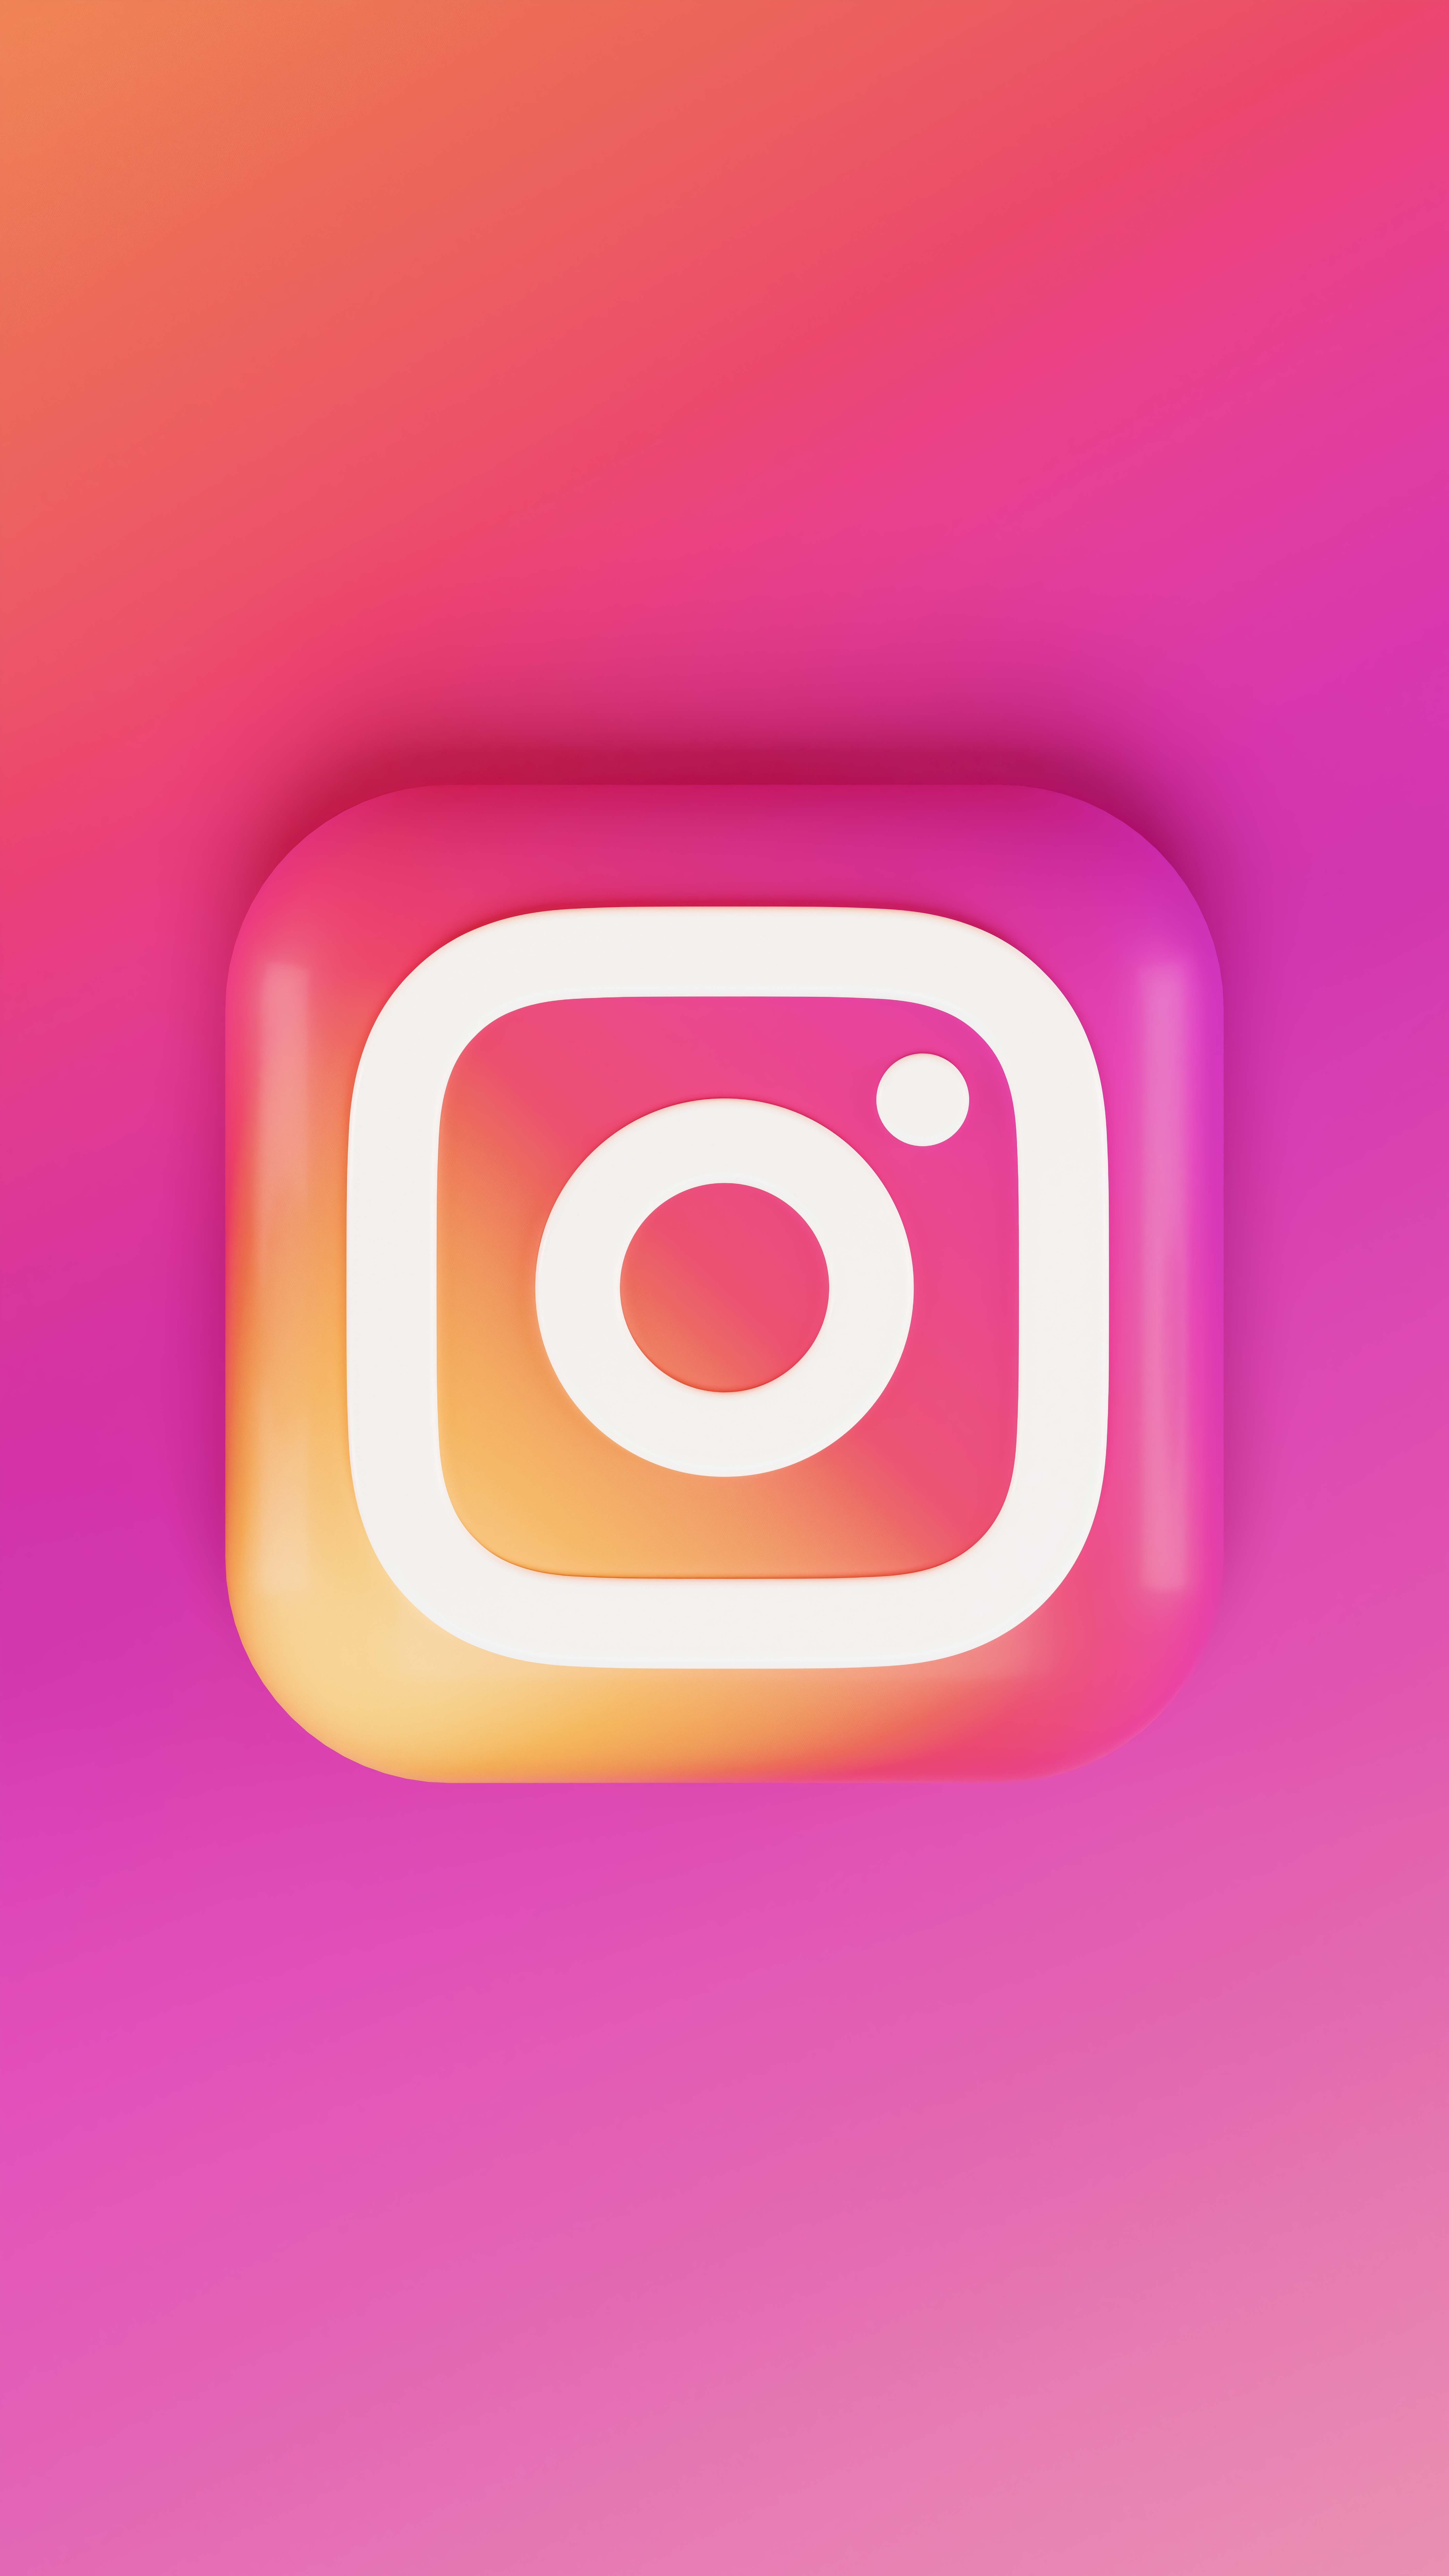 Smartphone achtergrond met Instagram logo en roze gloed